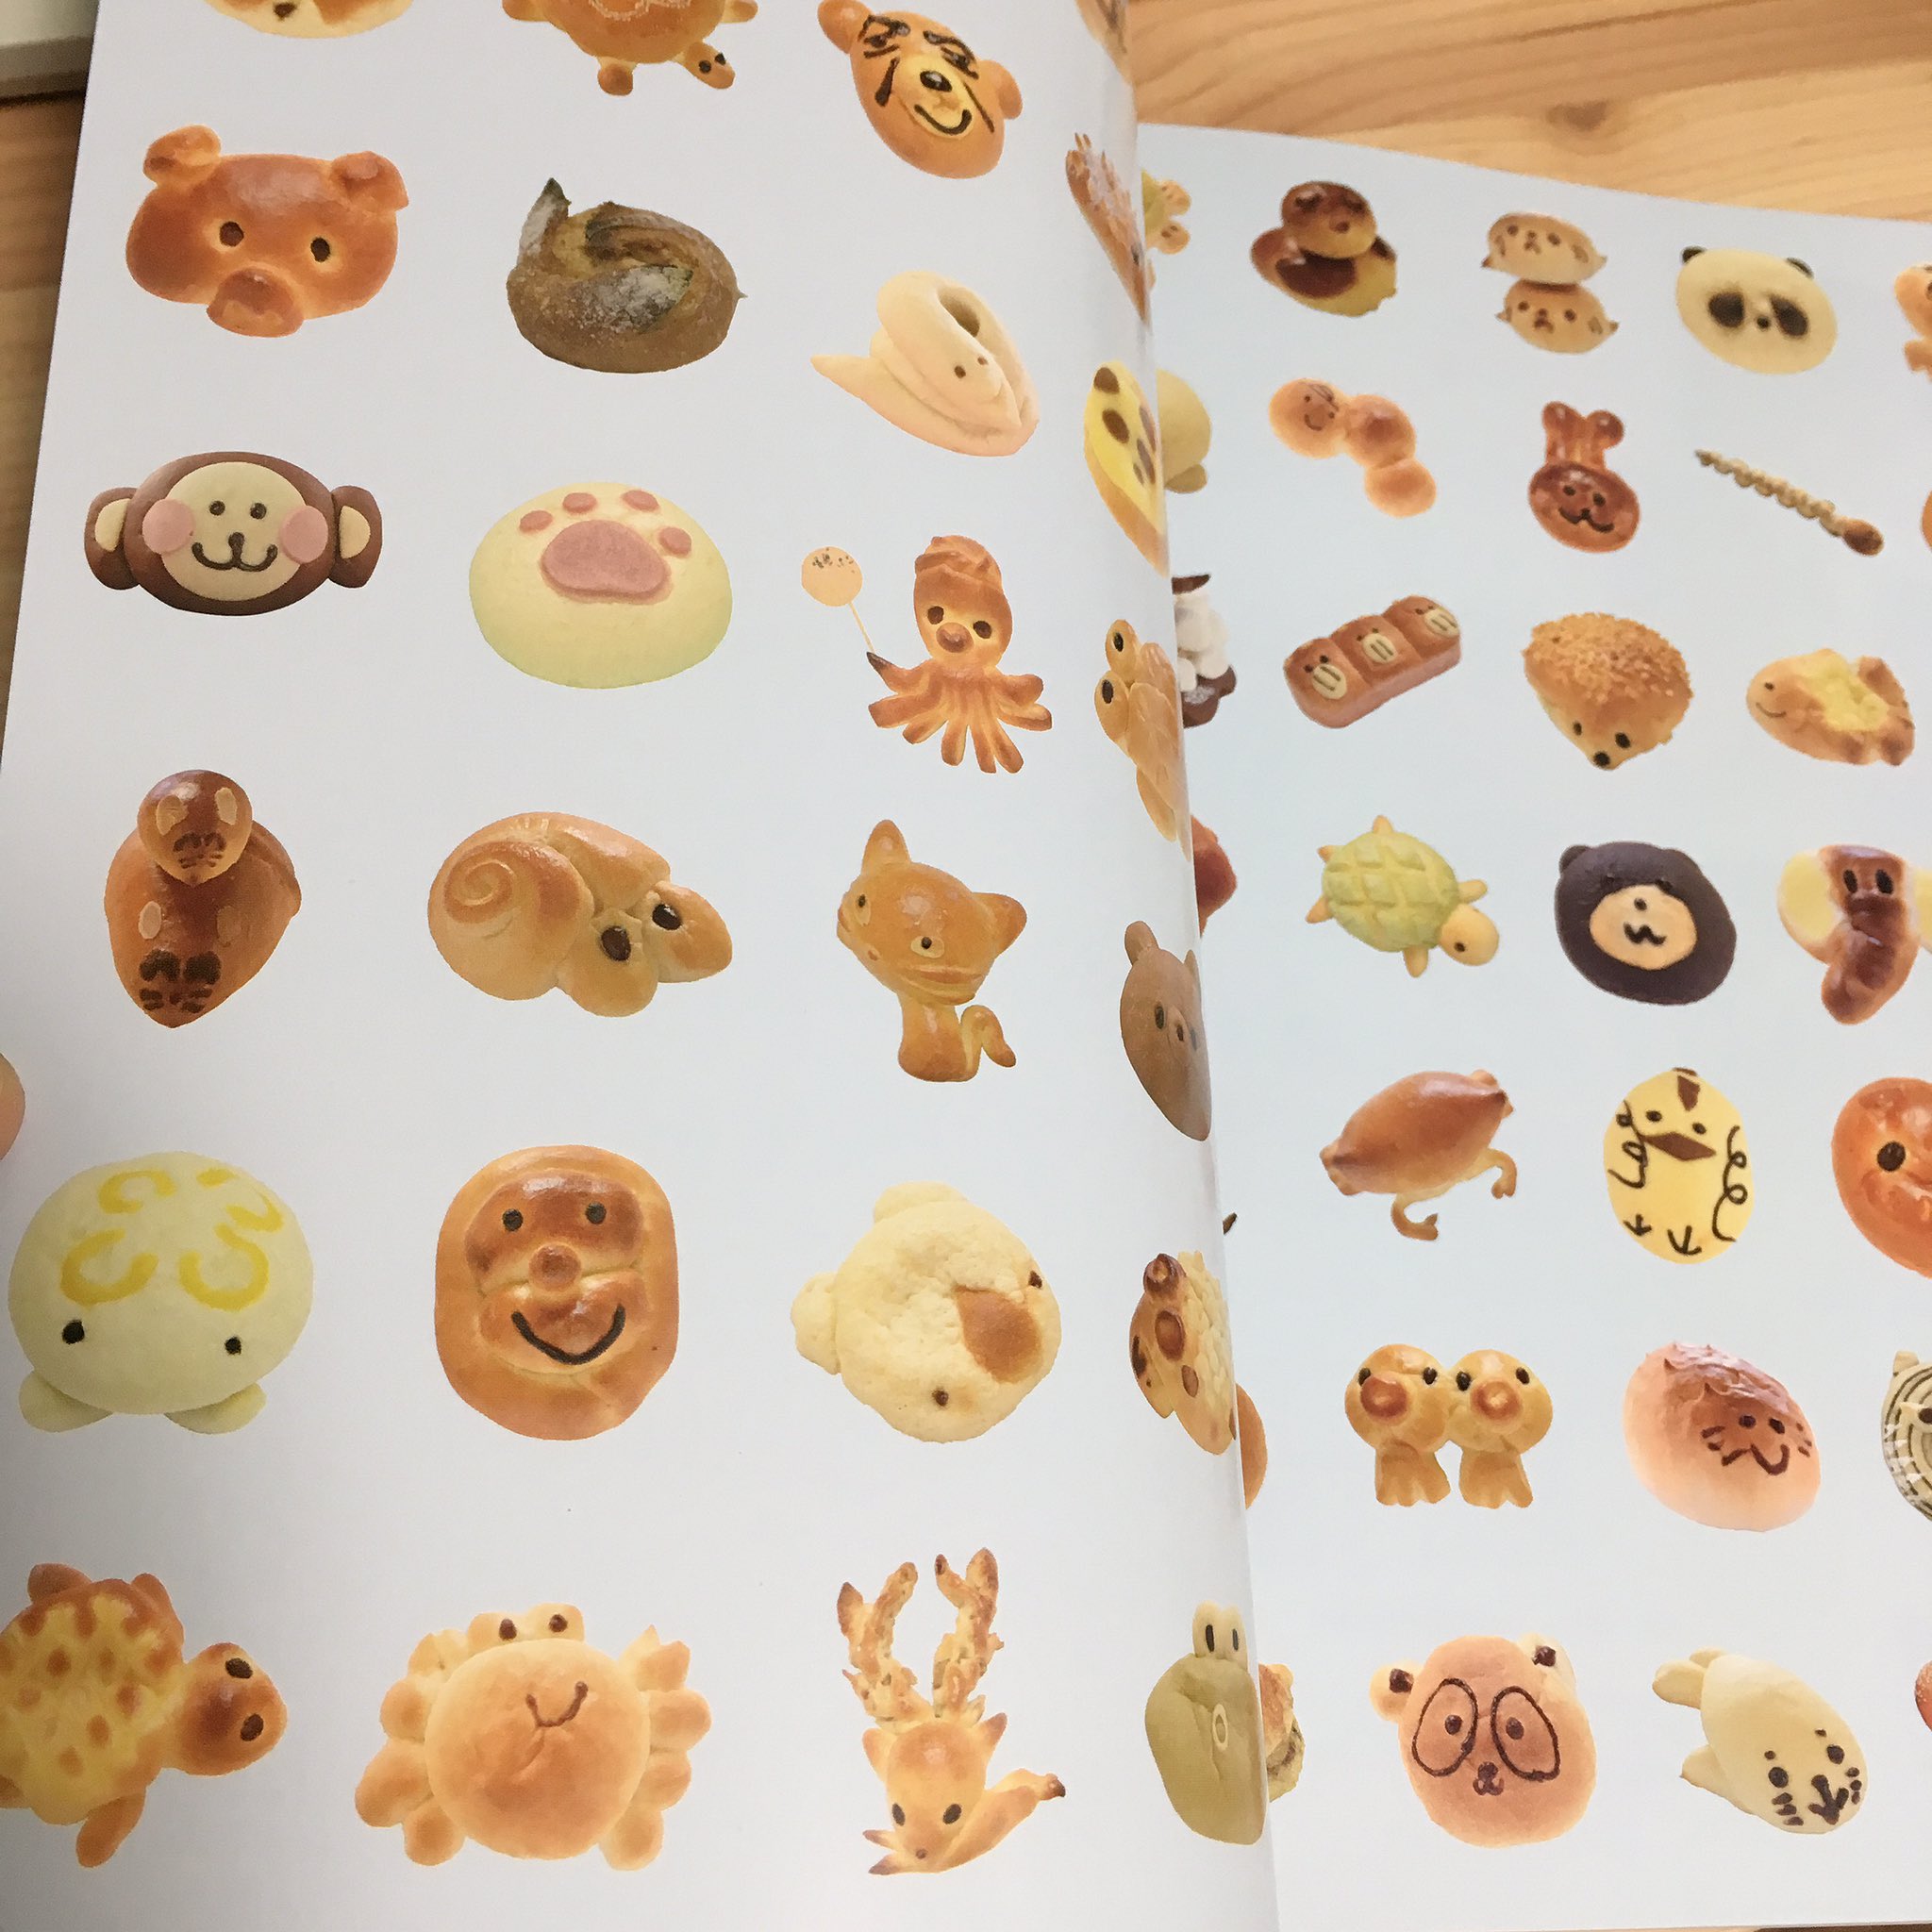 粘土動物パンmoka Pa Twitter 東京 横浜どうぶつパン図鑑 すっごく可愛いです 表紙の内側のパン柄がかわゆ過ぎました 111ページもあって写真も大きく 見応えがあり 動物パンの販売期間や価格など 内容も盛り沢山で 眺めているだけでも癒されました